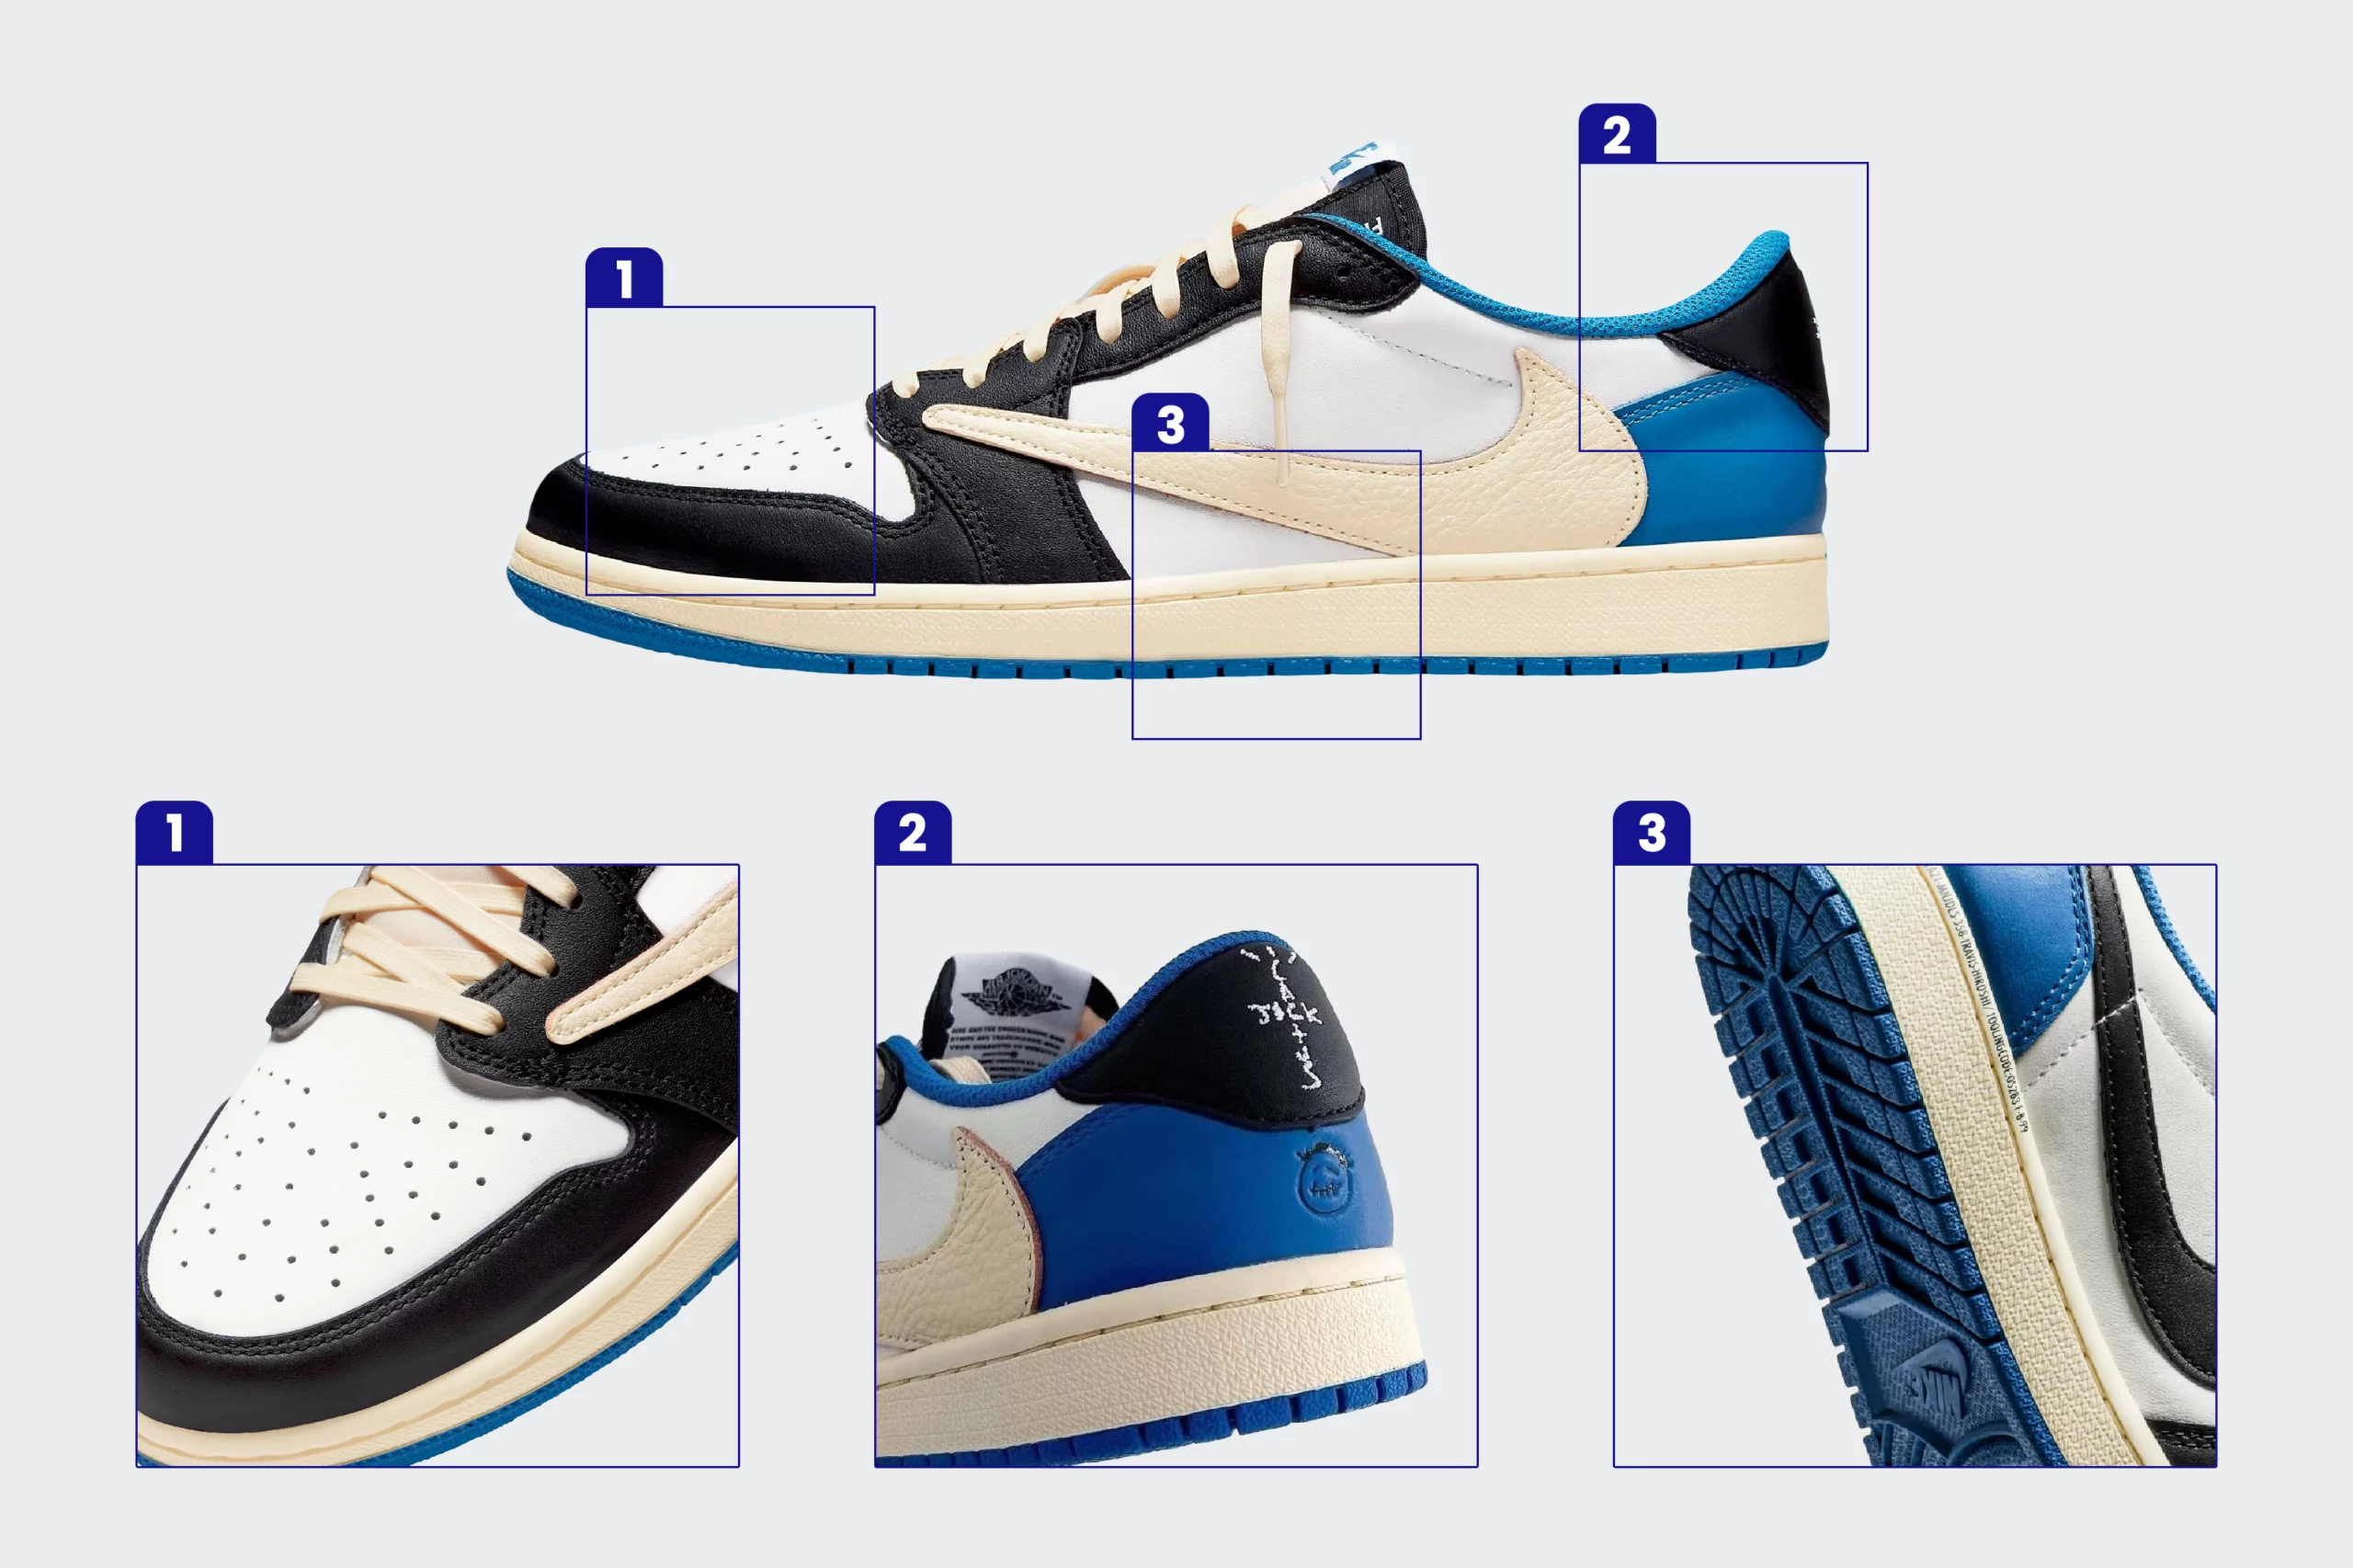 10 Steps to Check Real vs Fake Nike and Jordan Brand Kicks – ARCH-USA